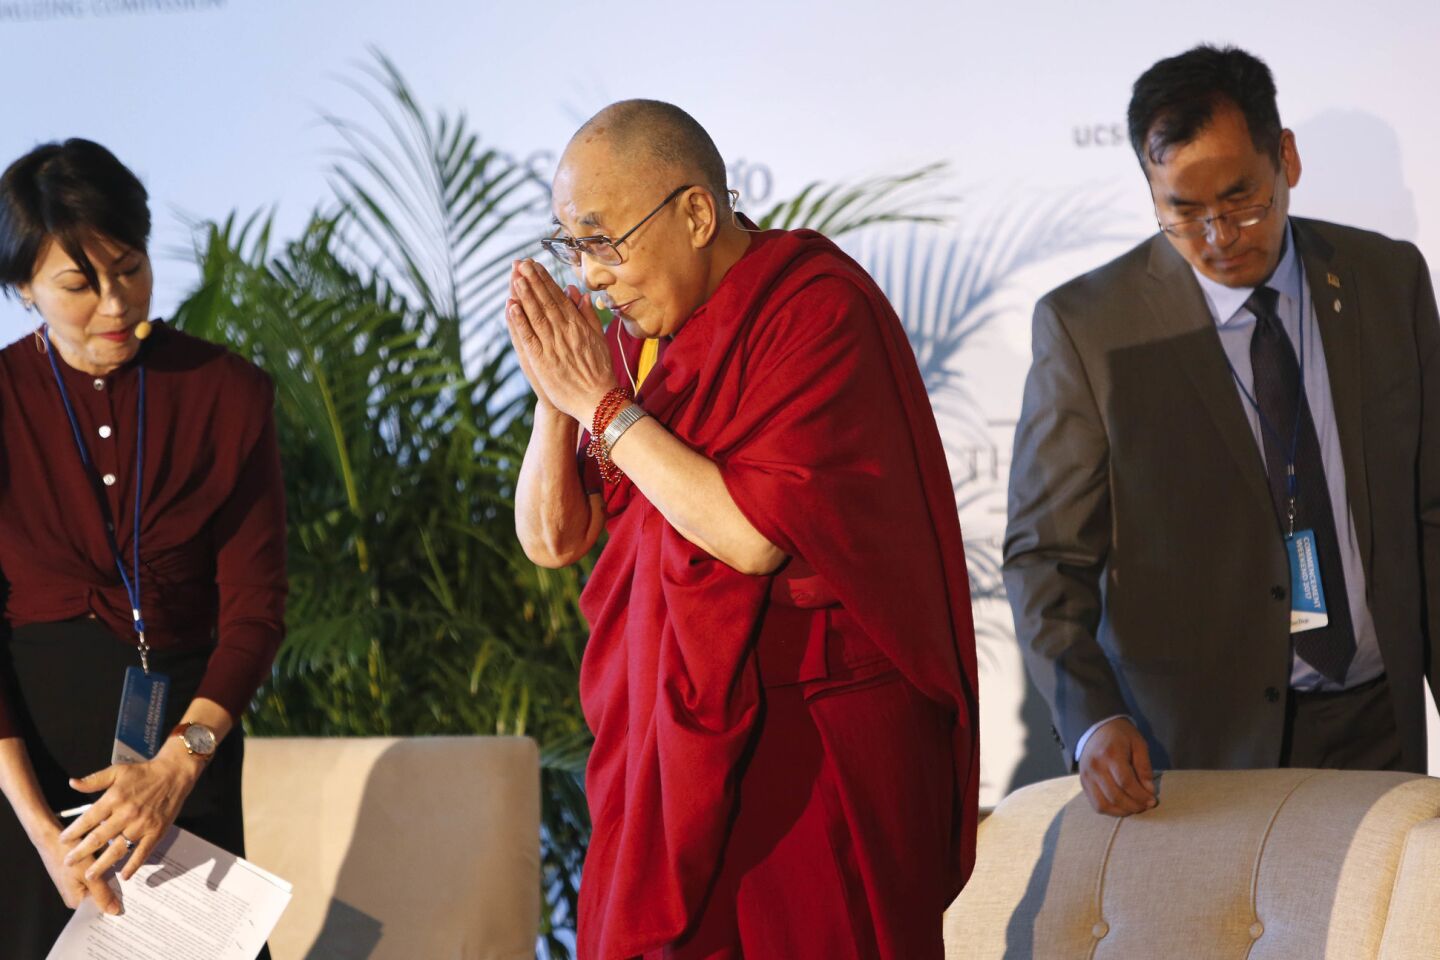 The Dalai Lama at UC San Diego